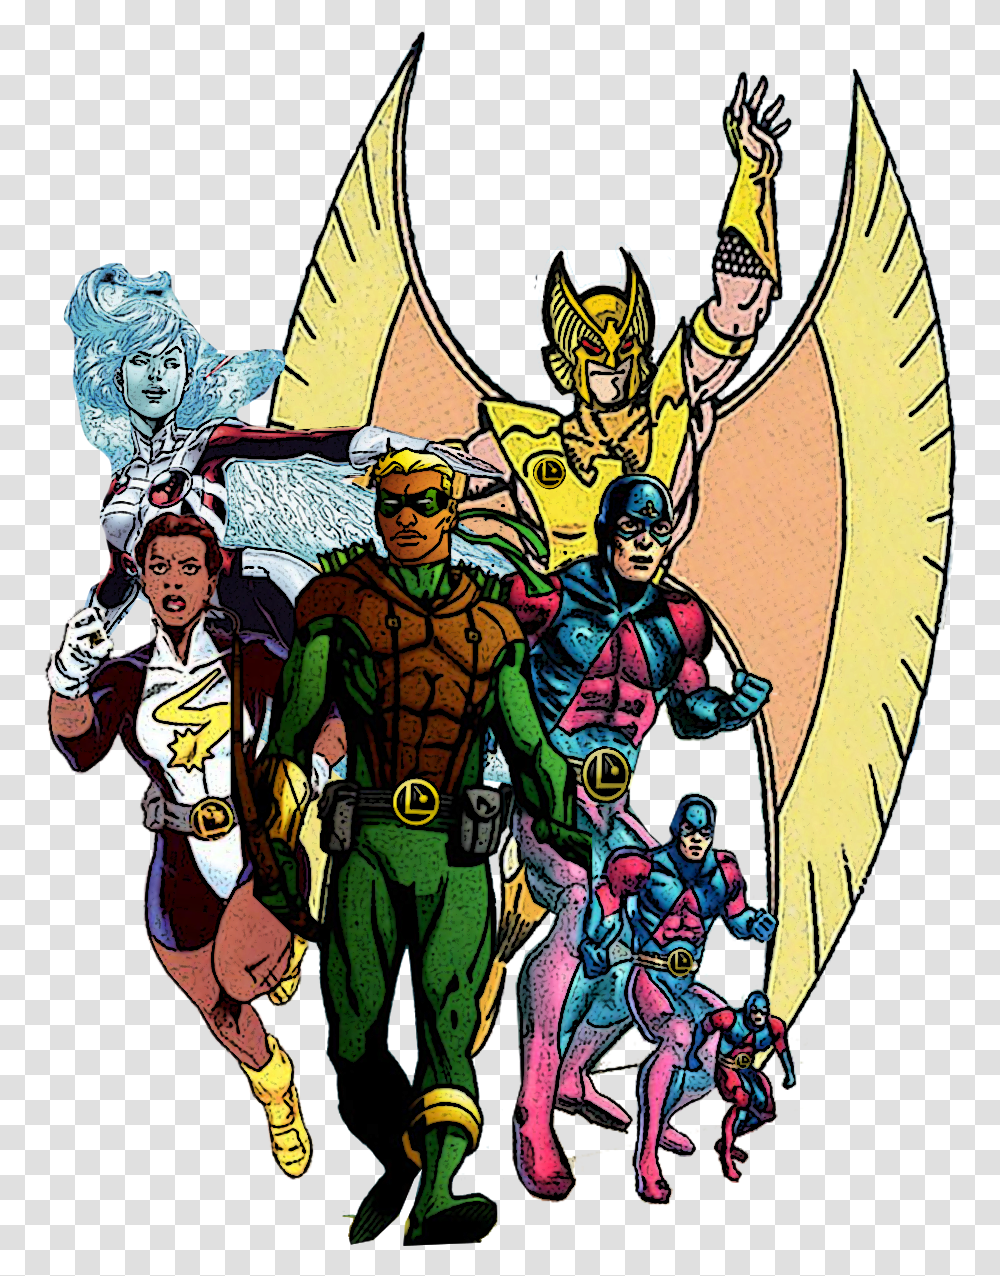 Legends Of Tomorrow Legion Of Superheroes Legion Of Superheroes Concept Art, Person, Human, Batman, Poster Transparent Png